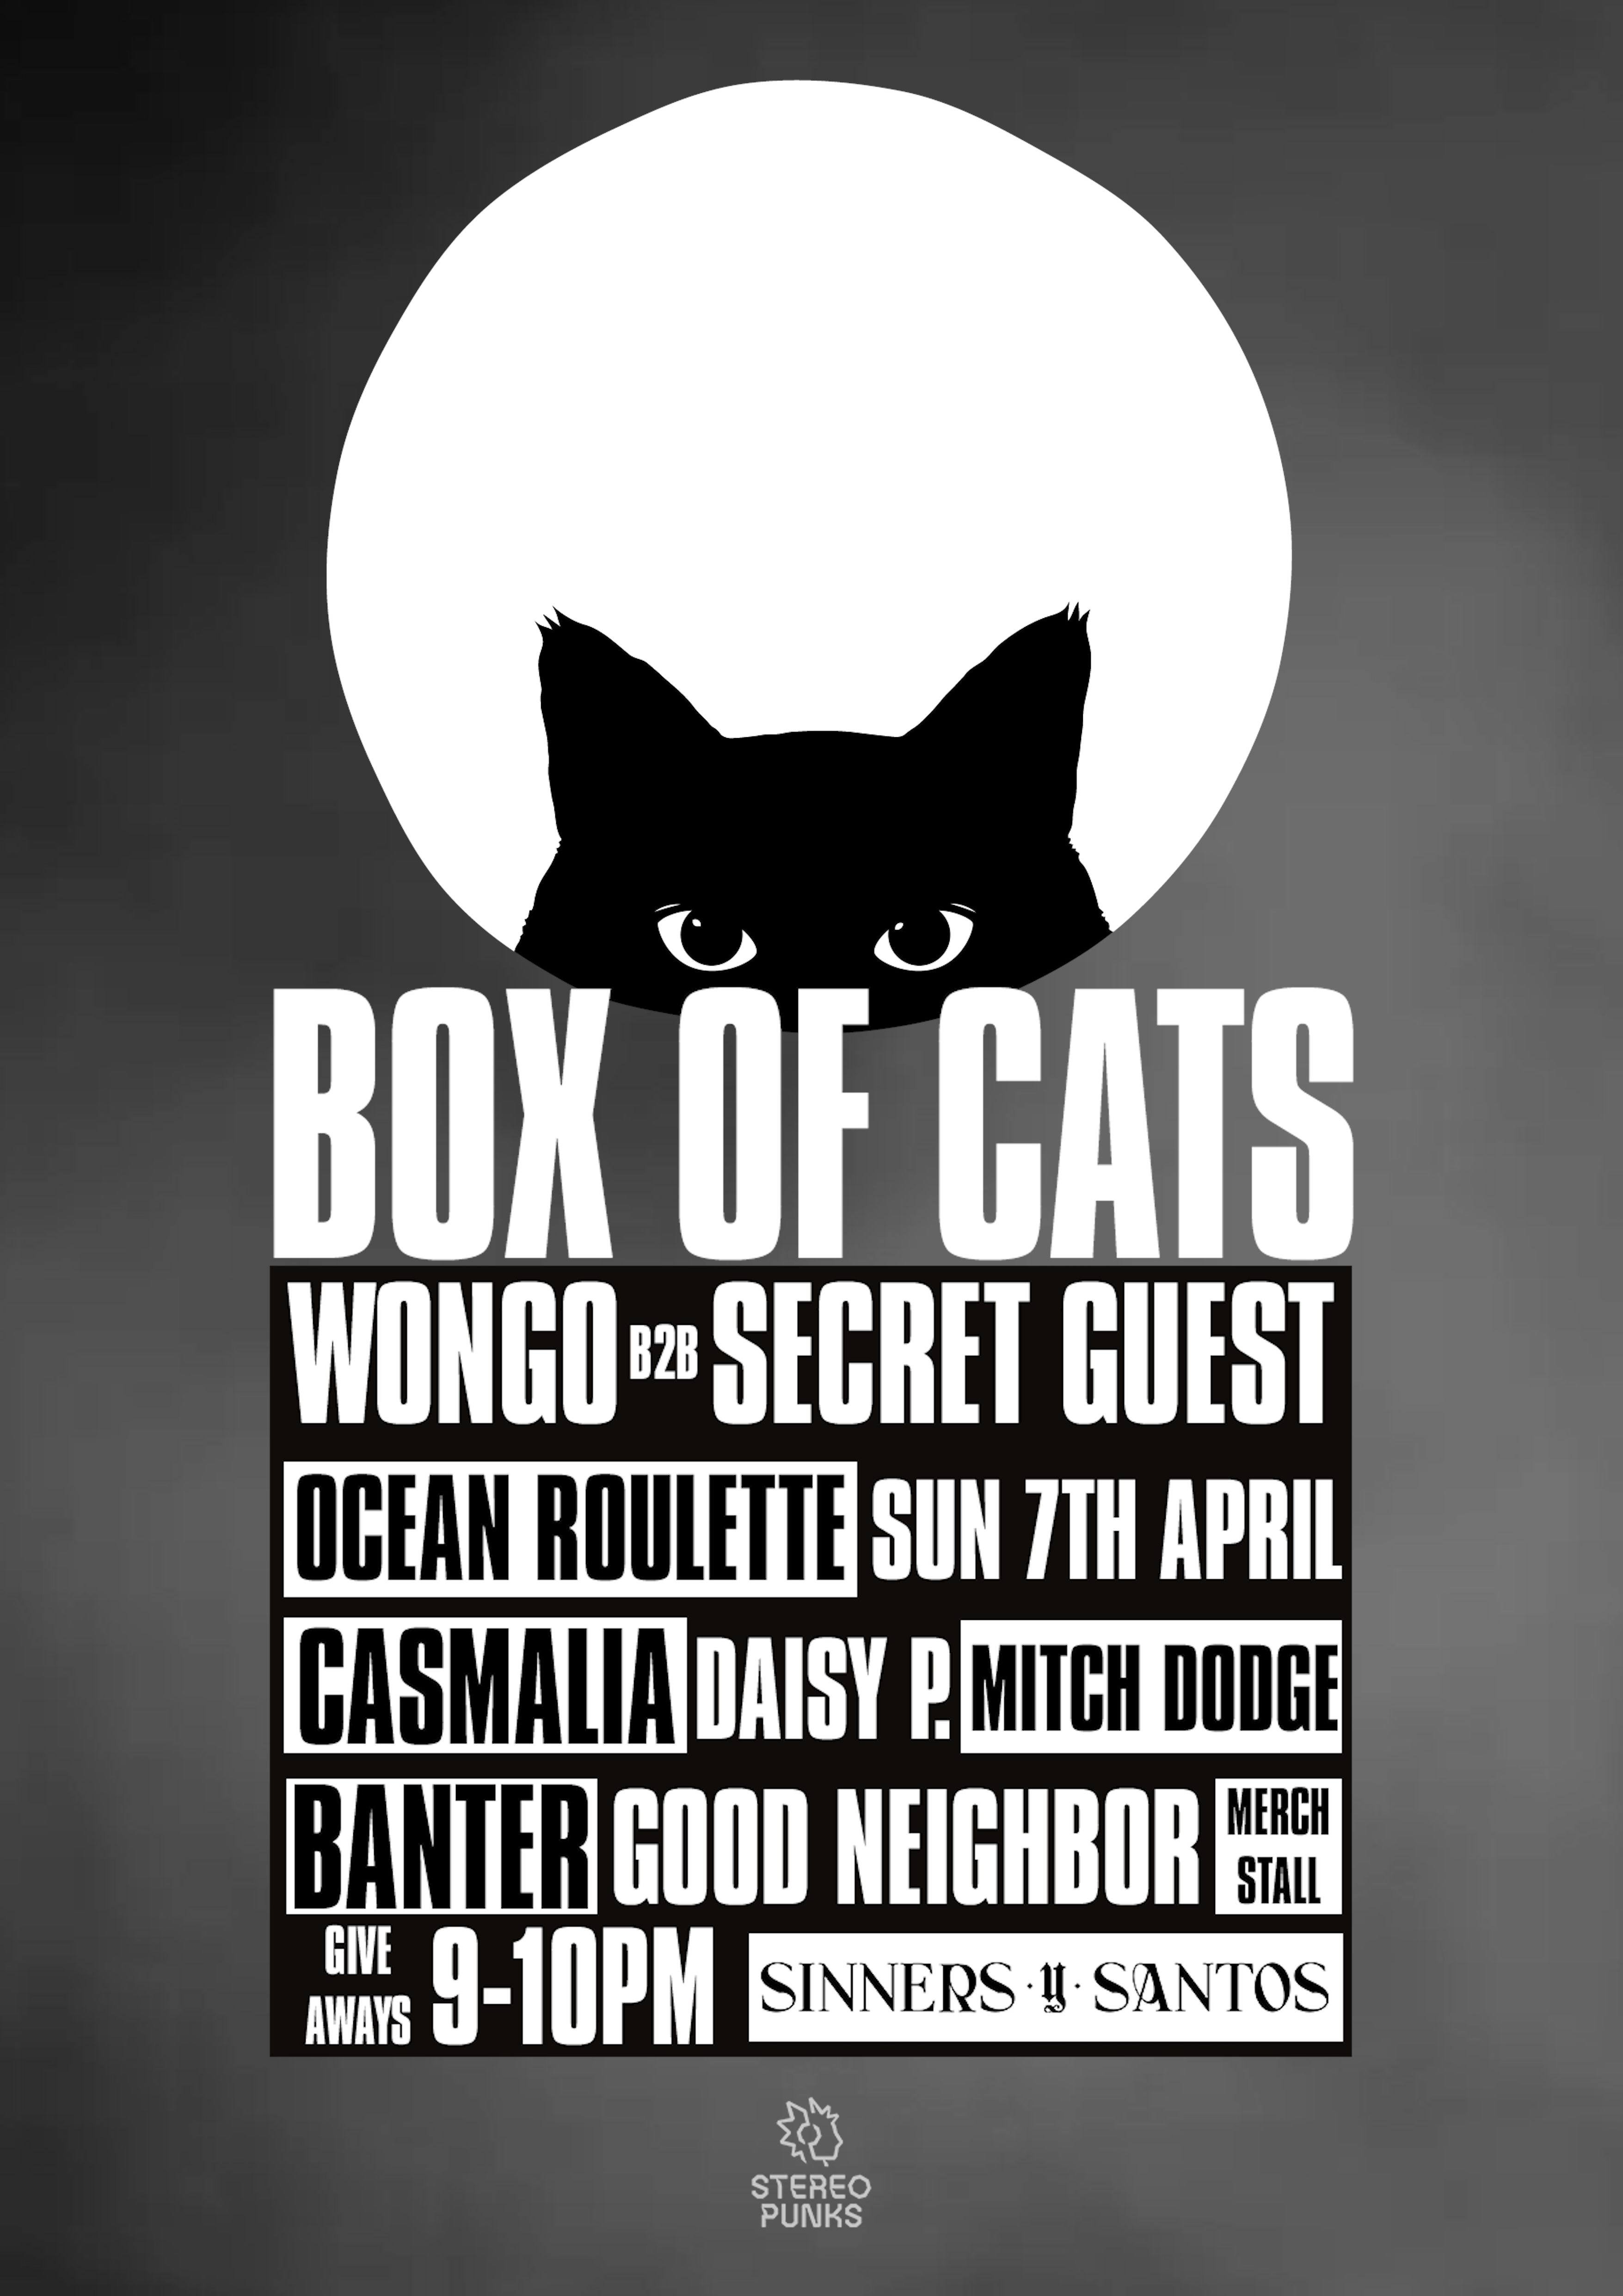 Box of Cats Showcase feat. Wongo + Friends - フライヤー表